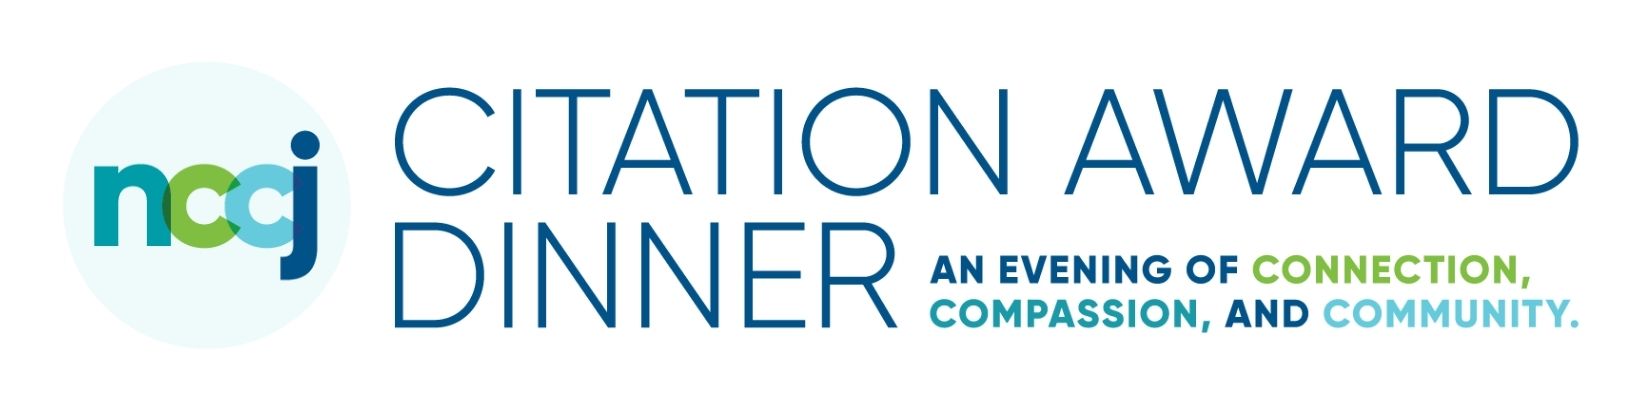 logo for NCCJ Citation Award Dinner